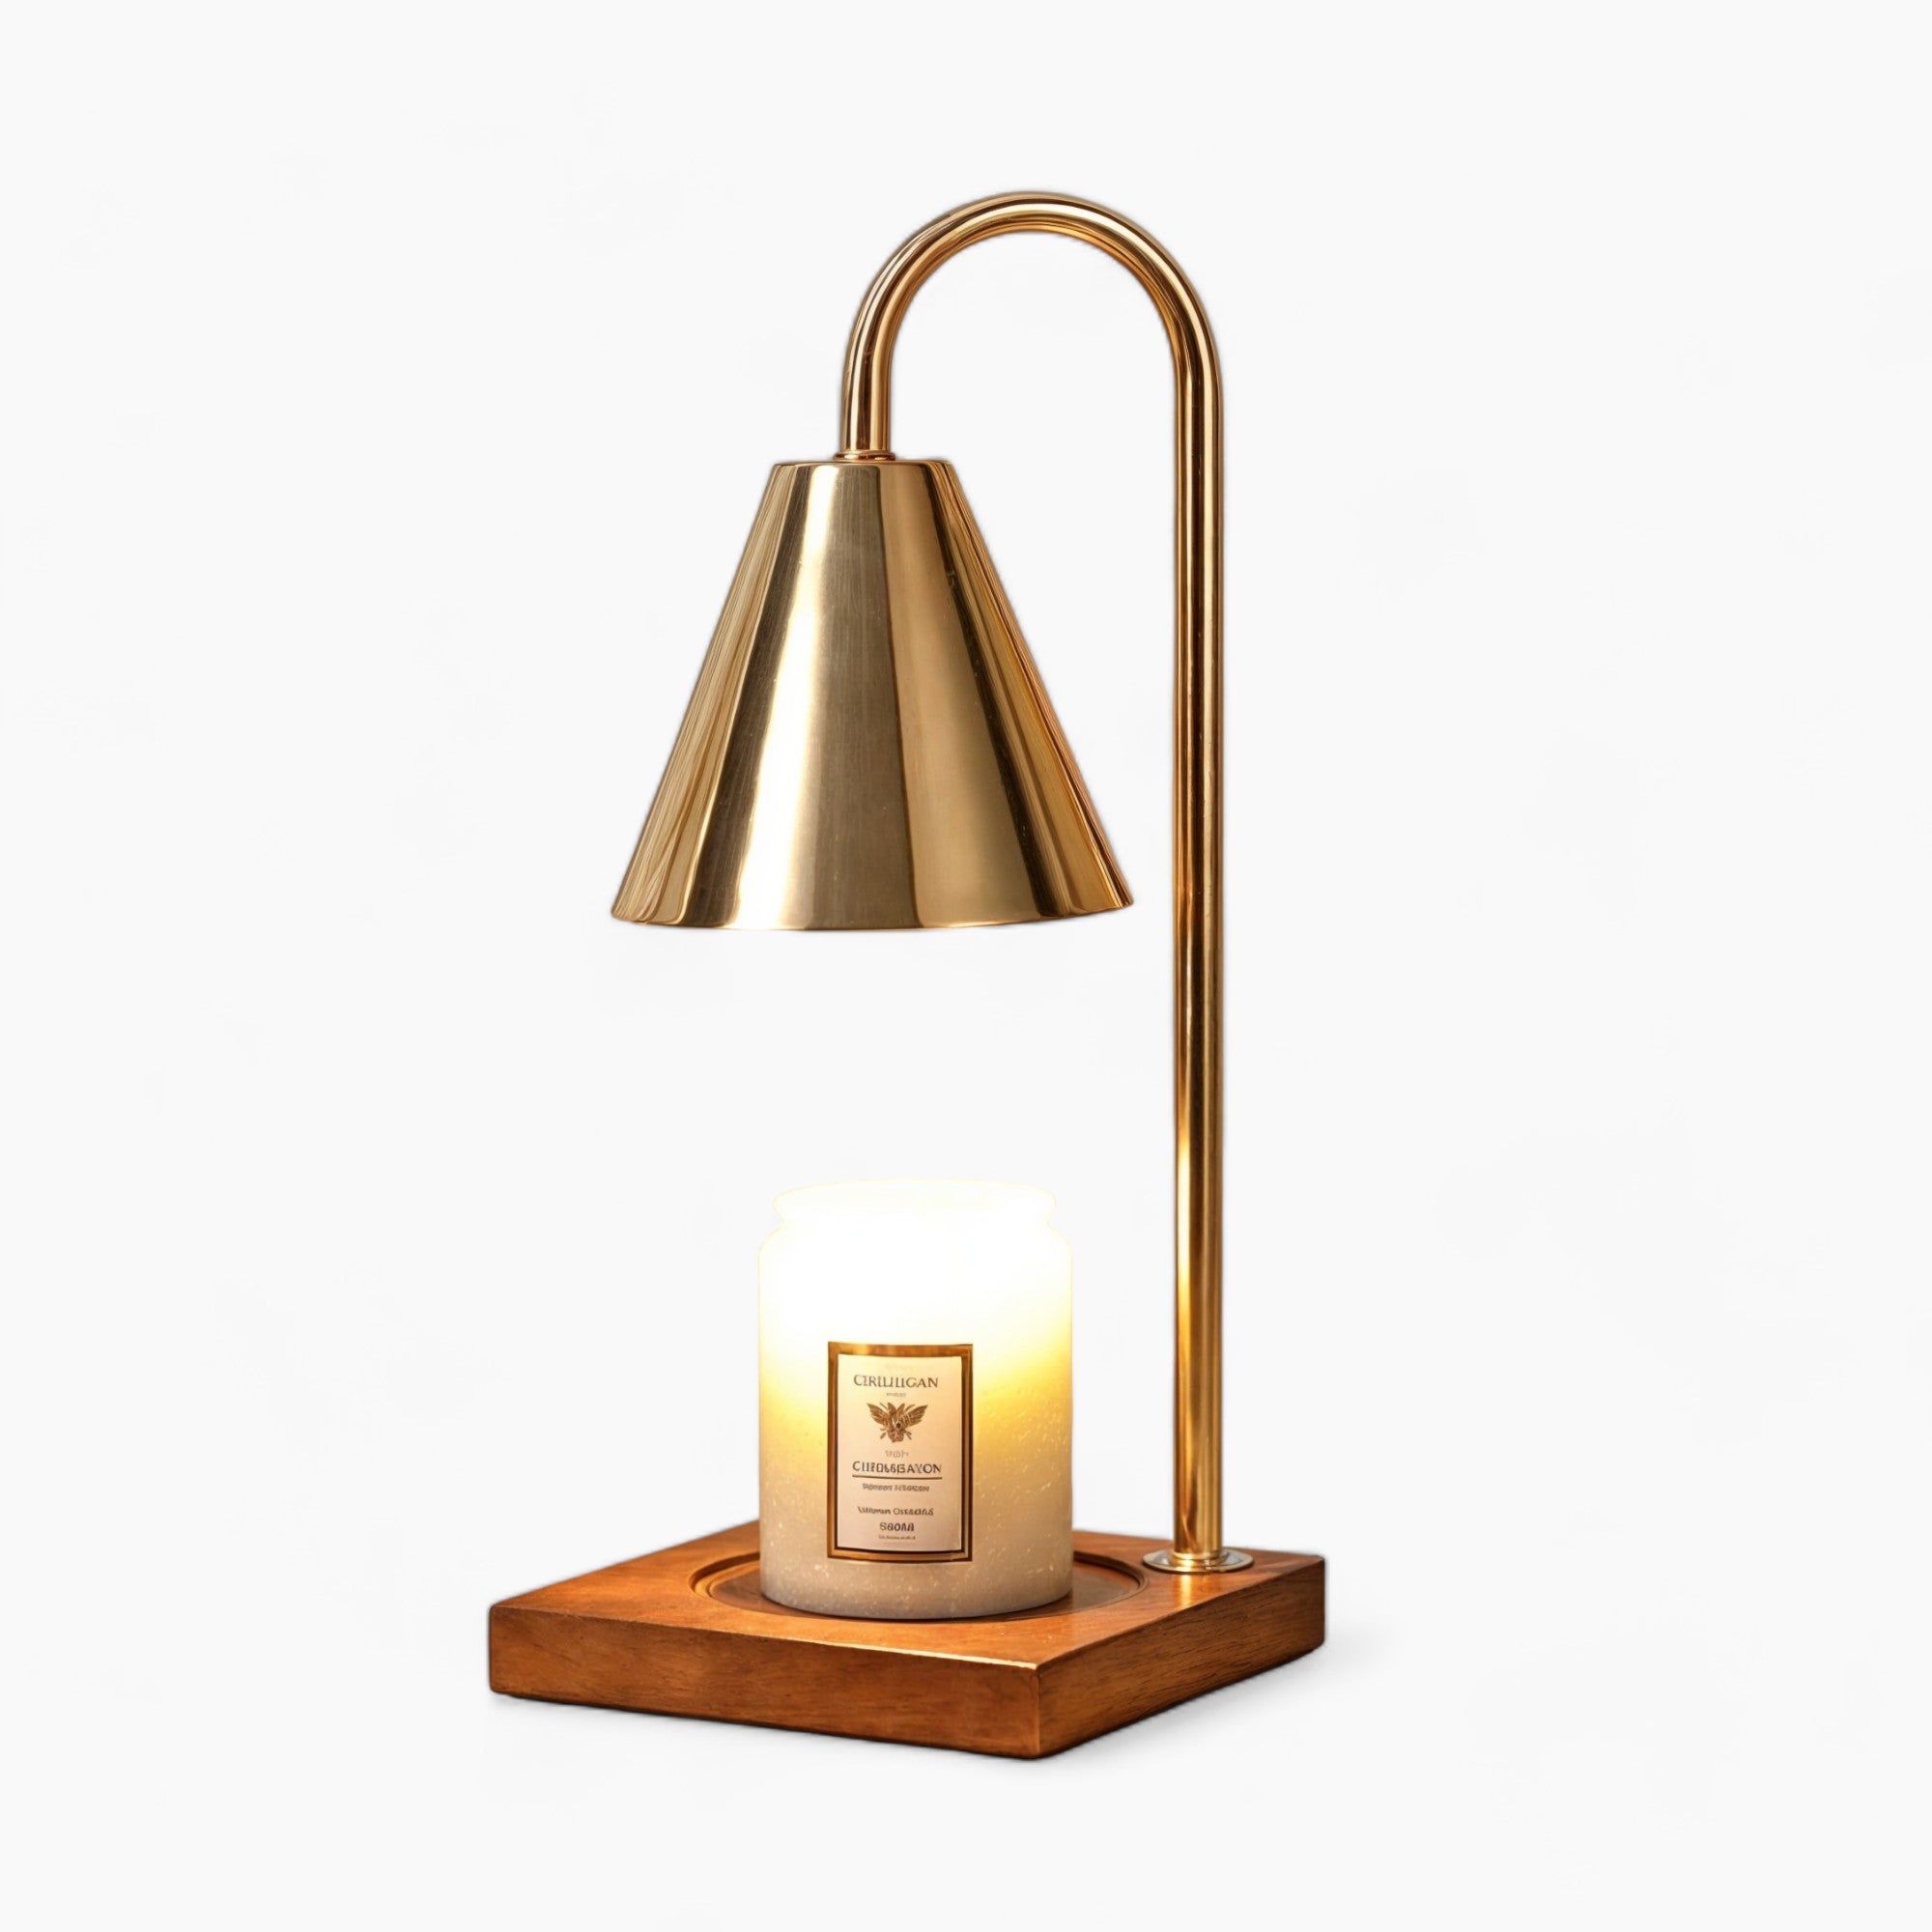 Dimmbare Kerzenwärmerlampe | Elektrischer Aromaschmelzer mit einstellbarer Helligkeit | Holzsockel, modernes Design in Weiß, Schwarz, Gold | Sichere & umweltfreundliche Duftkerzenheizung